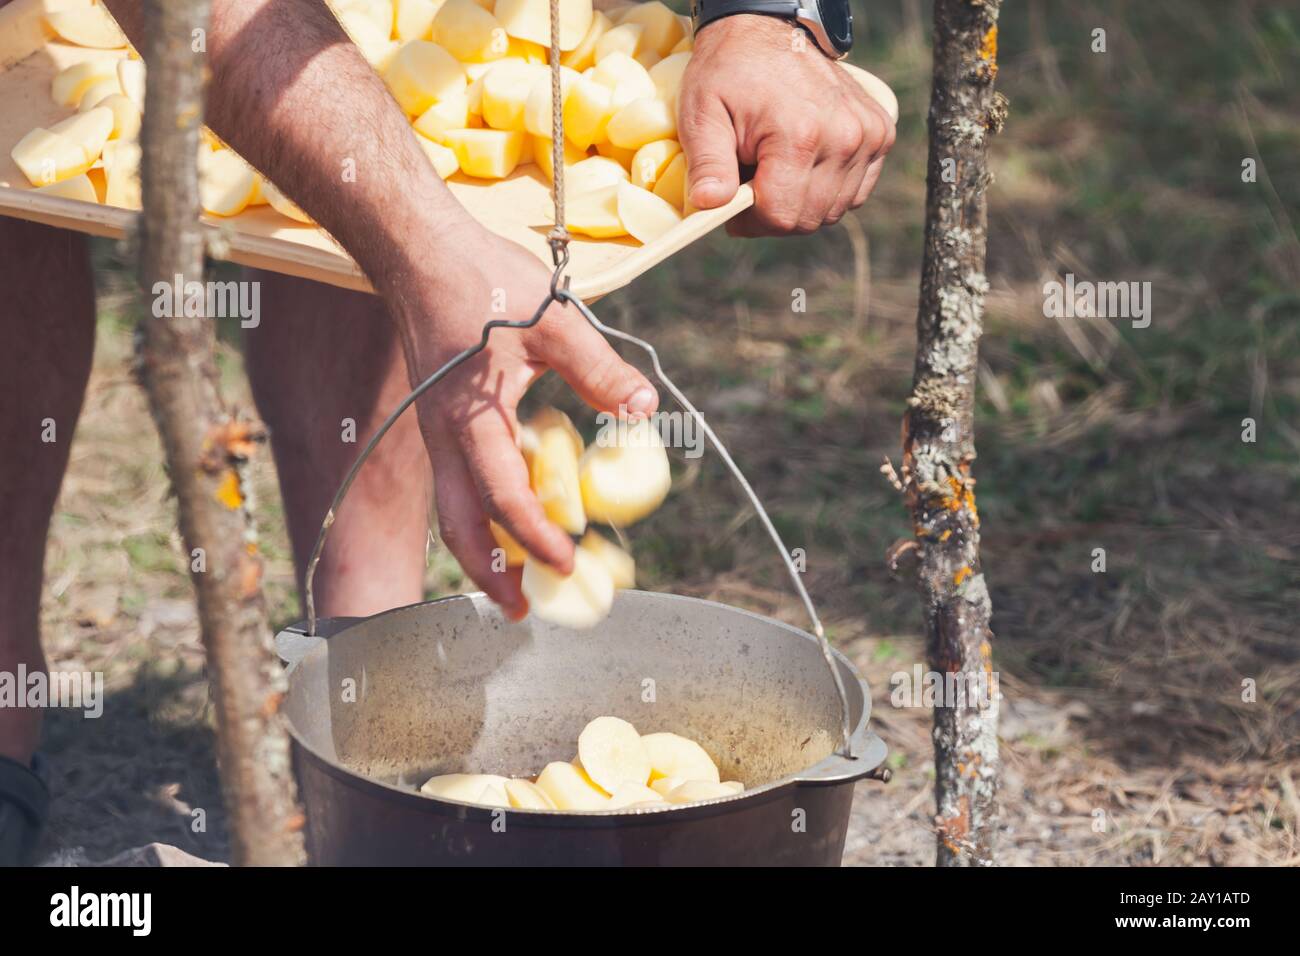 Männliche Hand fügt Kartoffel in einem Kessel hinzu. Zubereitung einer Suppe im offenen Feuer, Campingmahlzeit Stockfoto